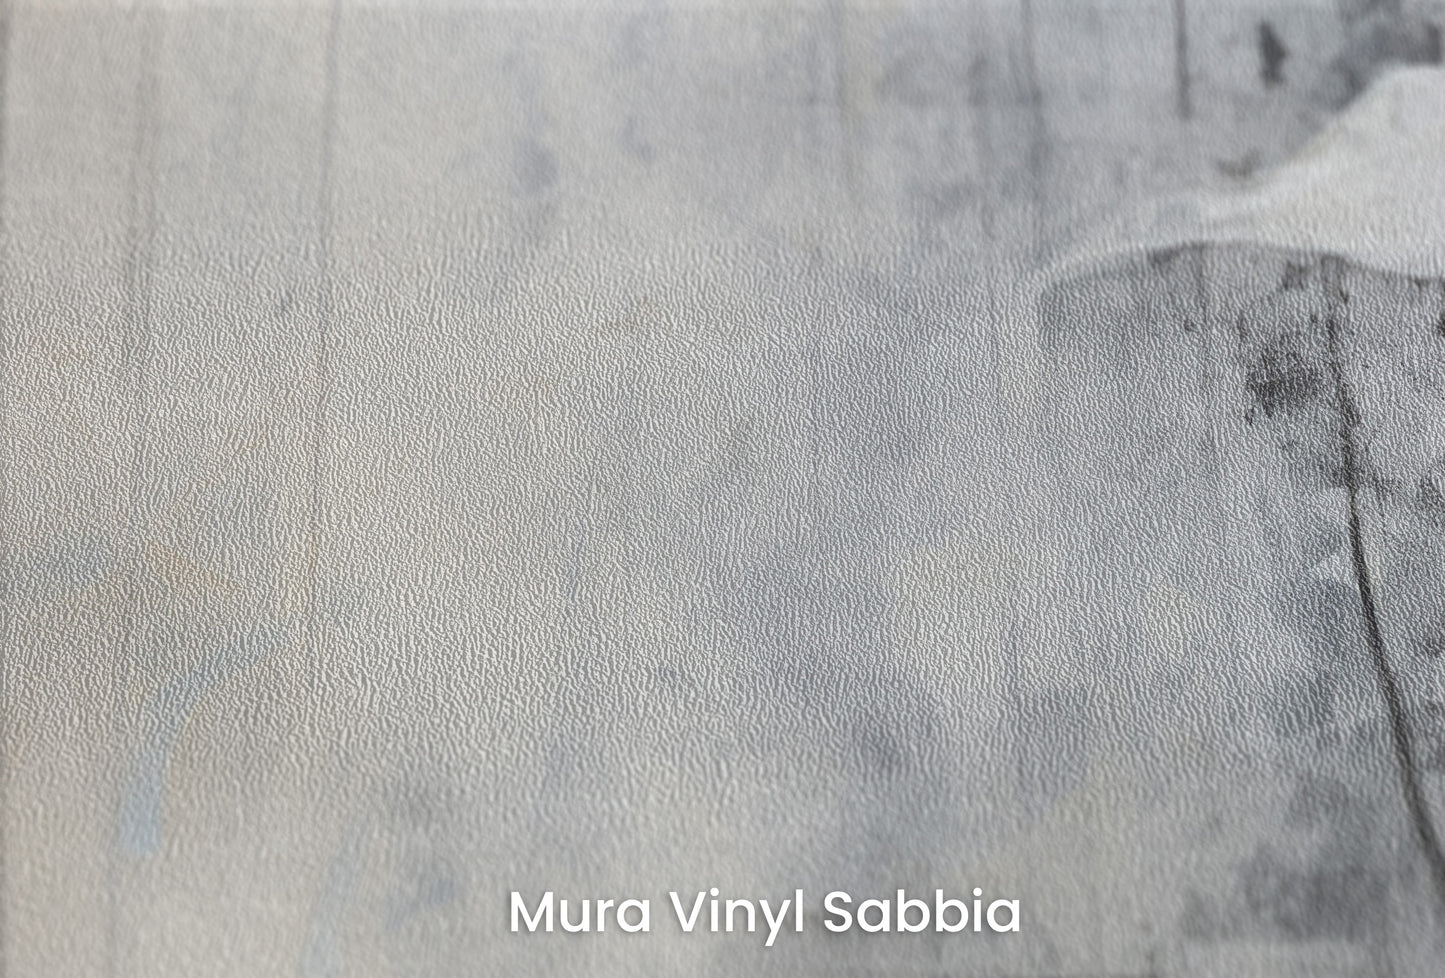 Zbliżenie na artystyczną fototapetę o nazwie SOFTLY SPEAKING SILHOUETTES na podłożu Mura Vinyl Sabbia struktura grubego ziarna piasku.